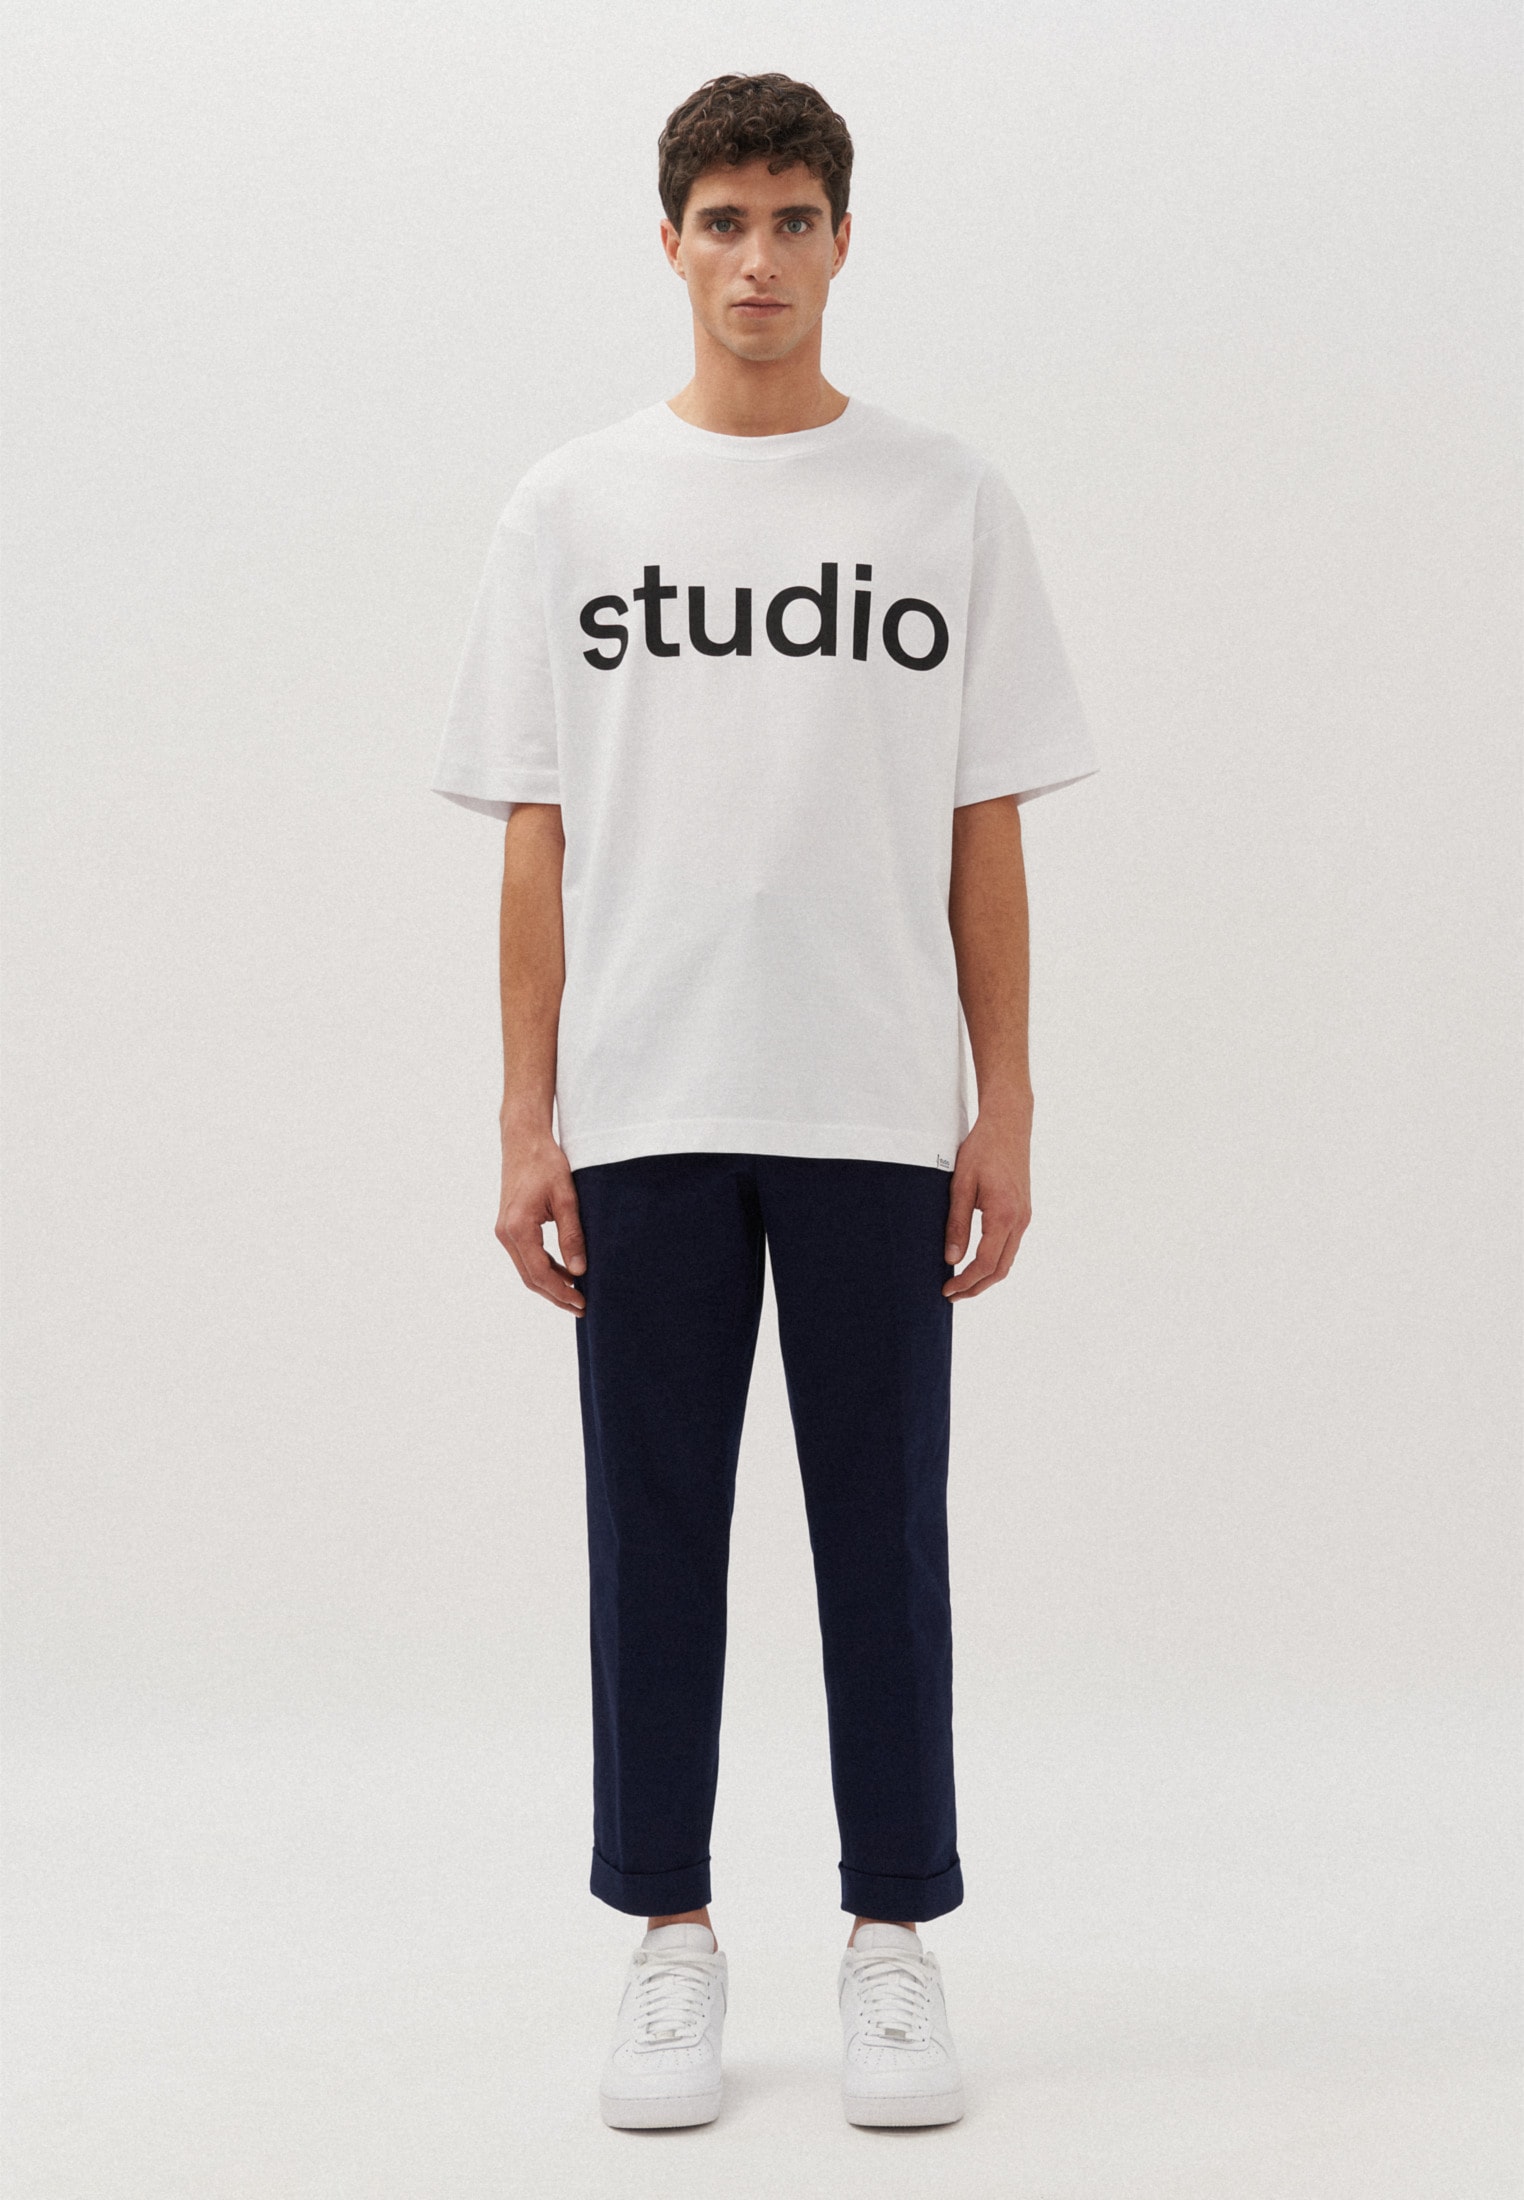 studio seidensticker T-Shirt »Studio« von studio seidensticker